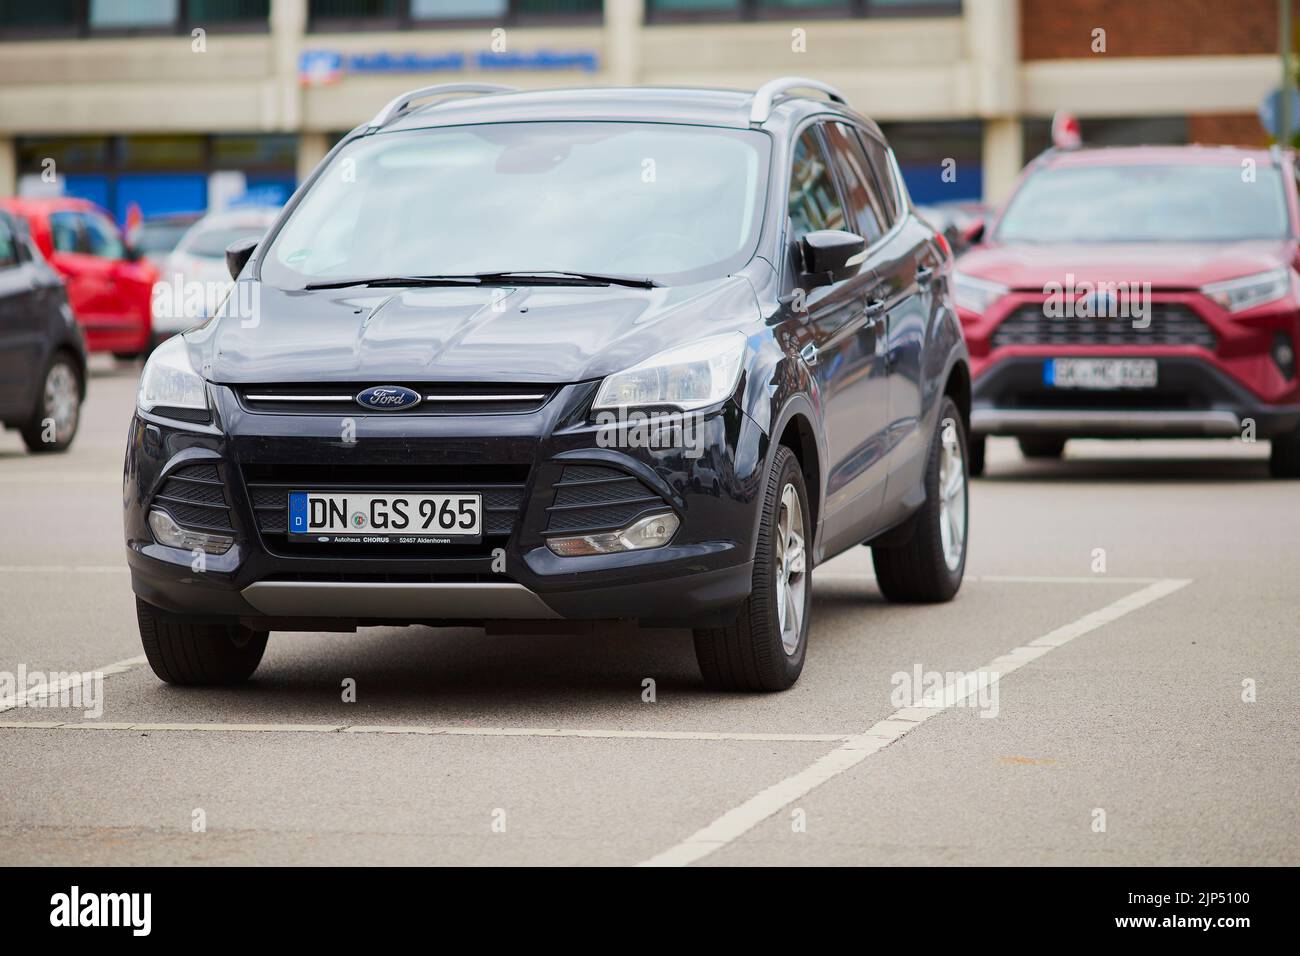 Une voiture Ford Kuga garée dans un parking avec plaques d'immatriculation allemandes Banque D'Images